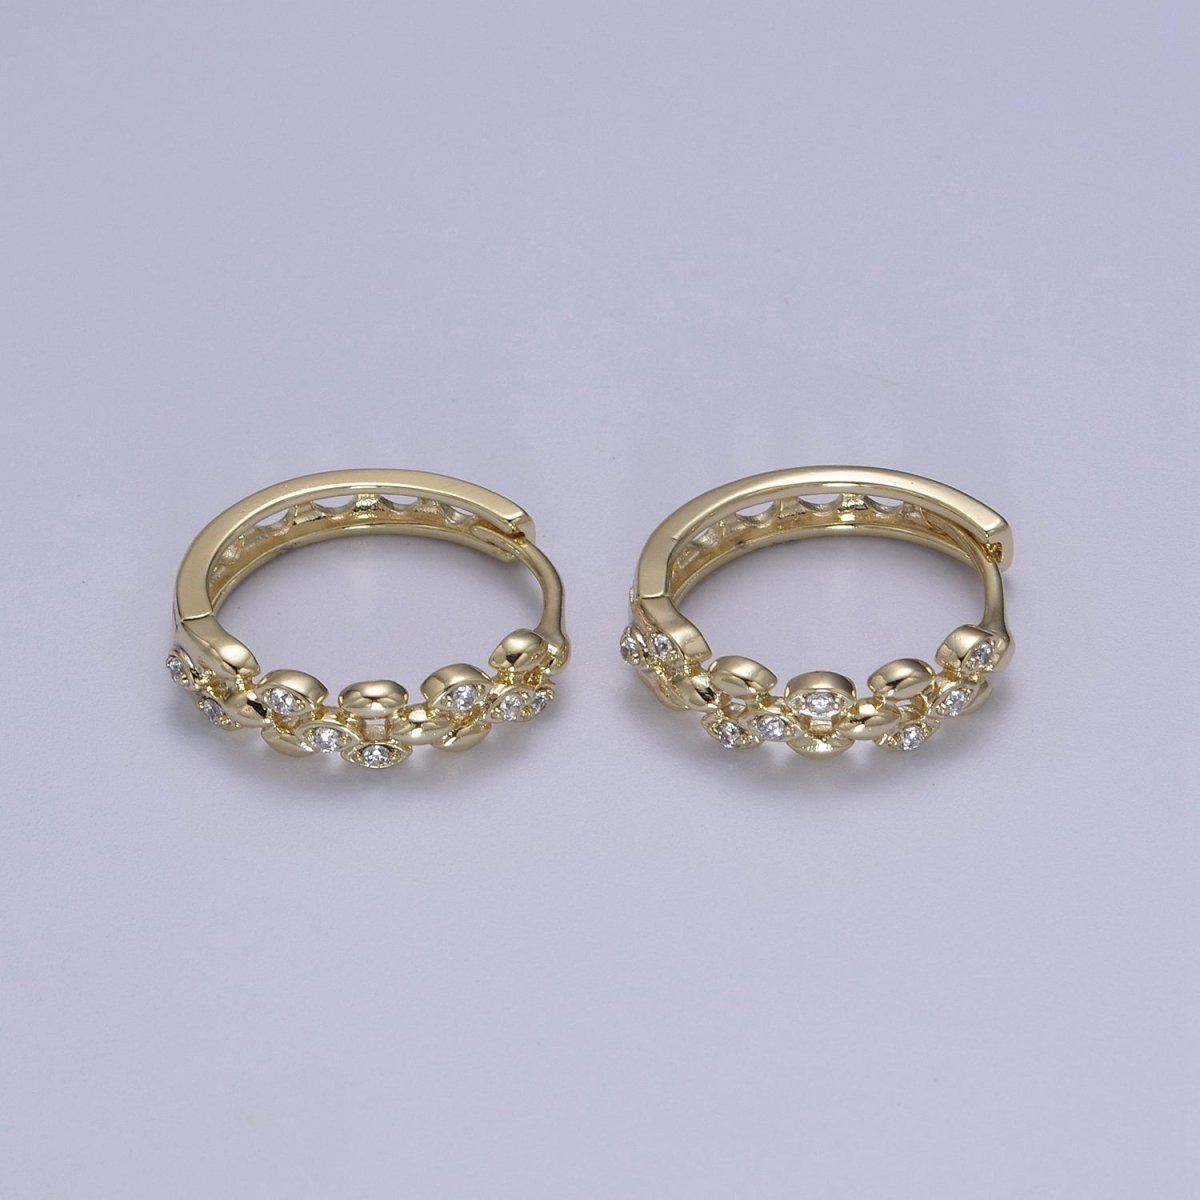 Dainty CZ Hoop Earrings • 14k Filled Gold Dainty Earrings • Huggie Hoops Earrings • 20mm Hoop Earrings • Minimalist Earrings • Gift for Her T-297 - DLUXCA